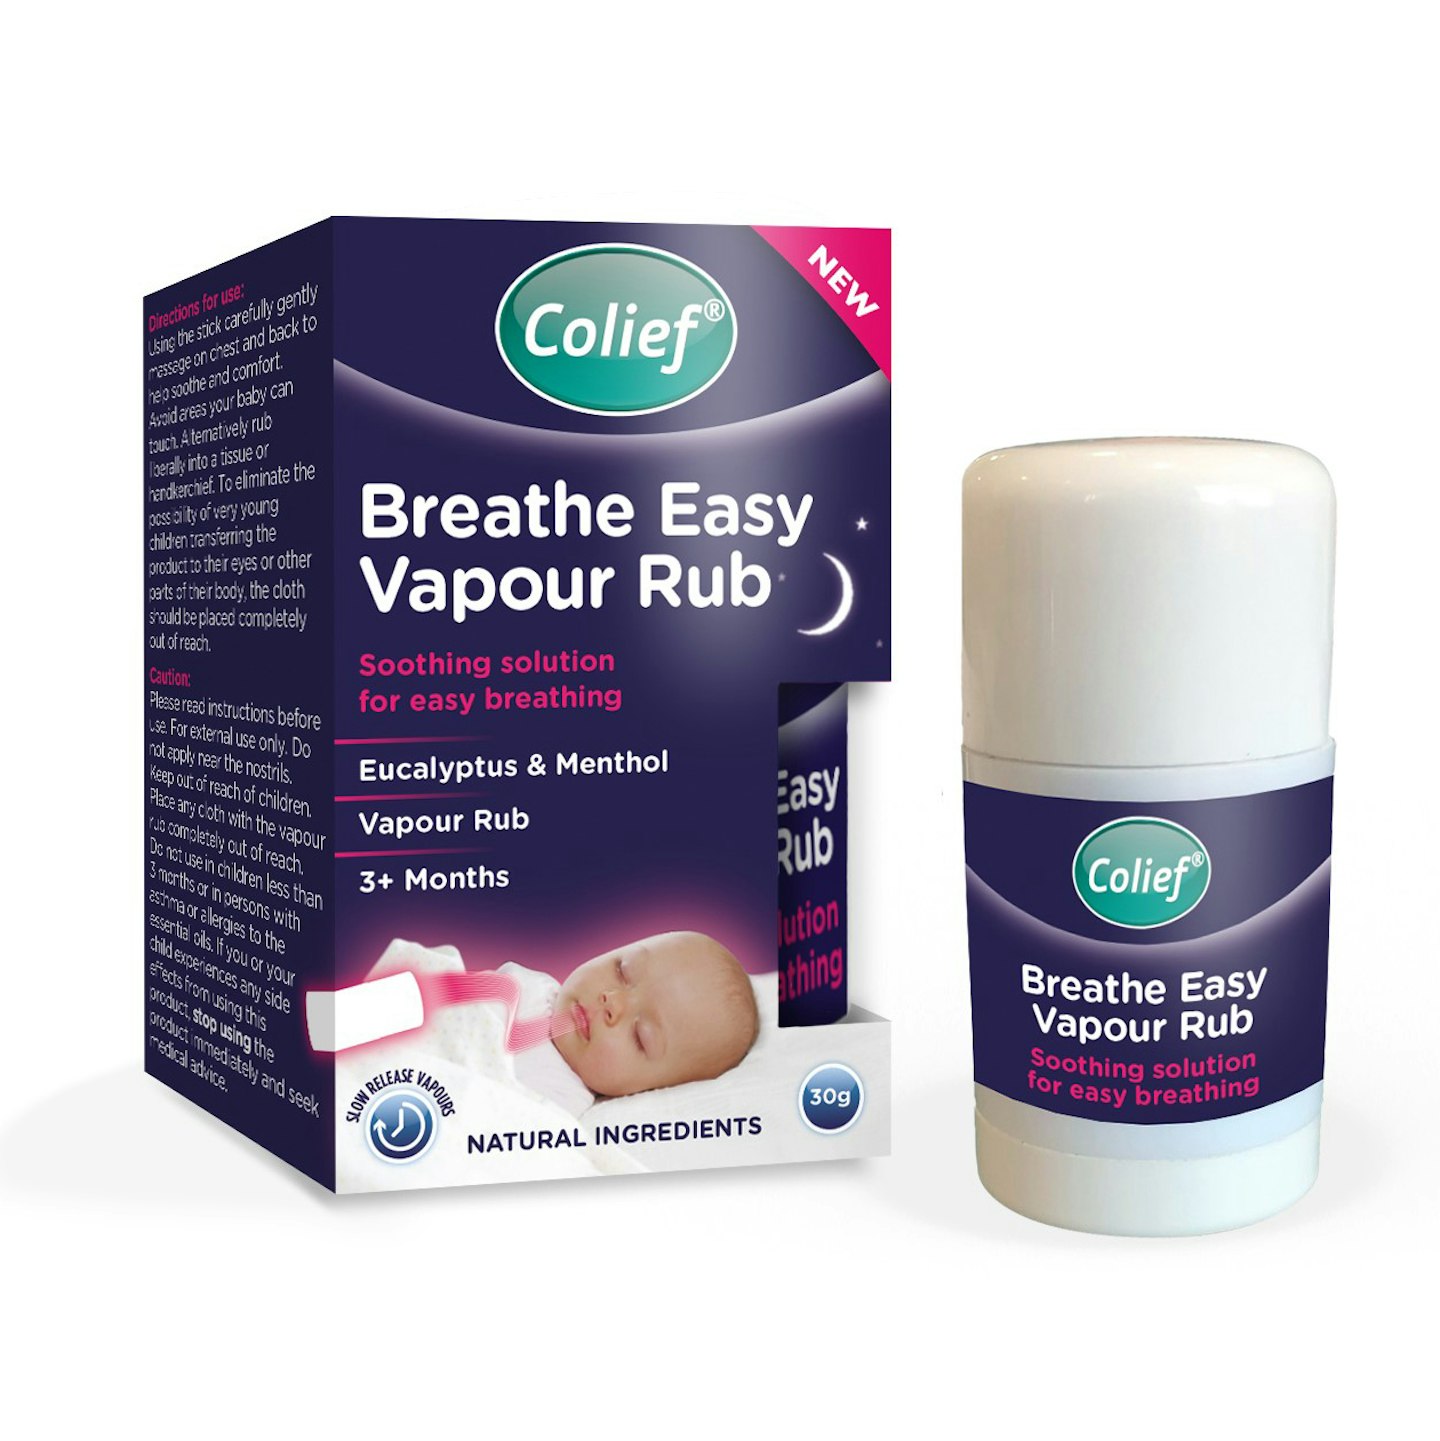 Colief Breathe Easy